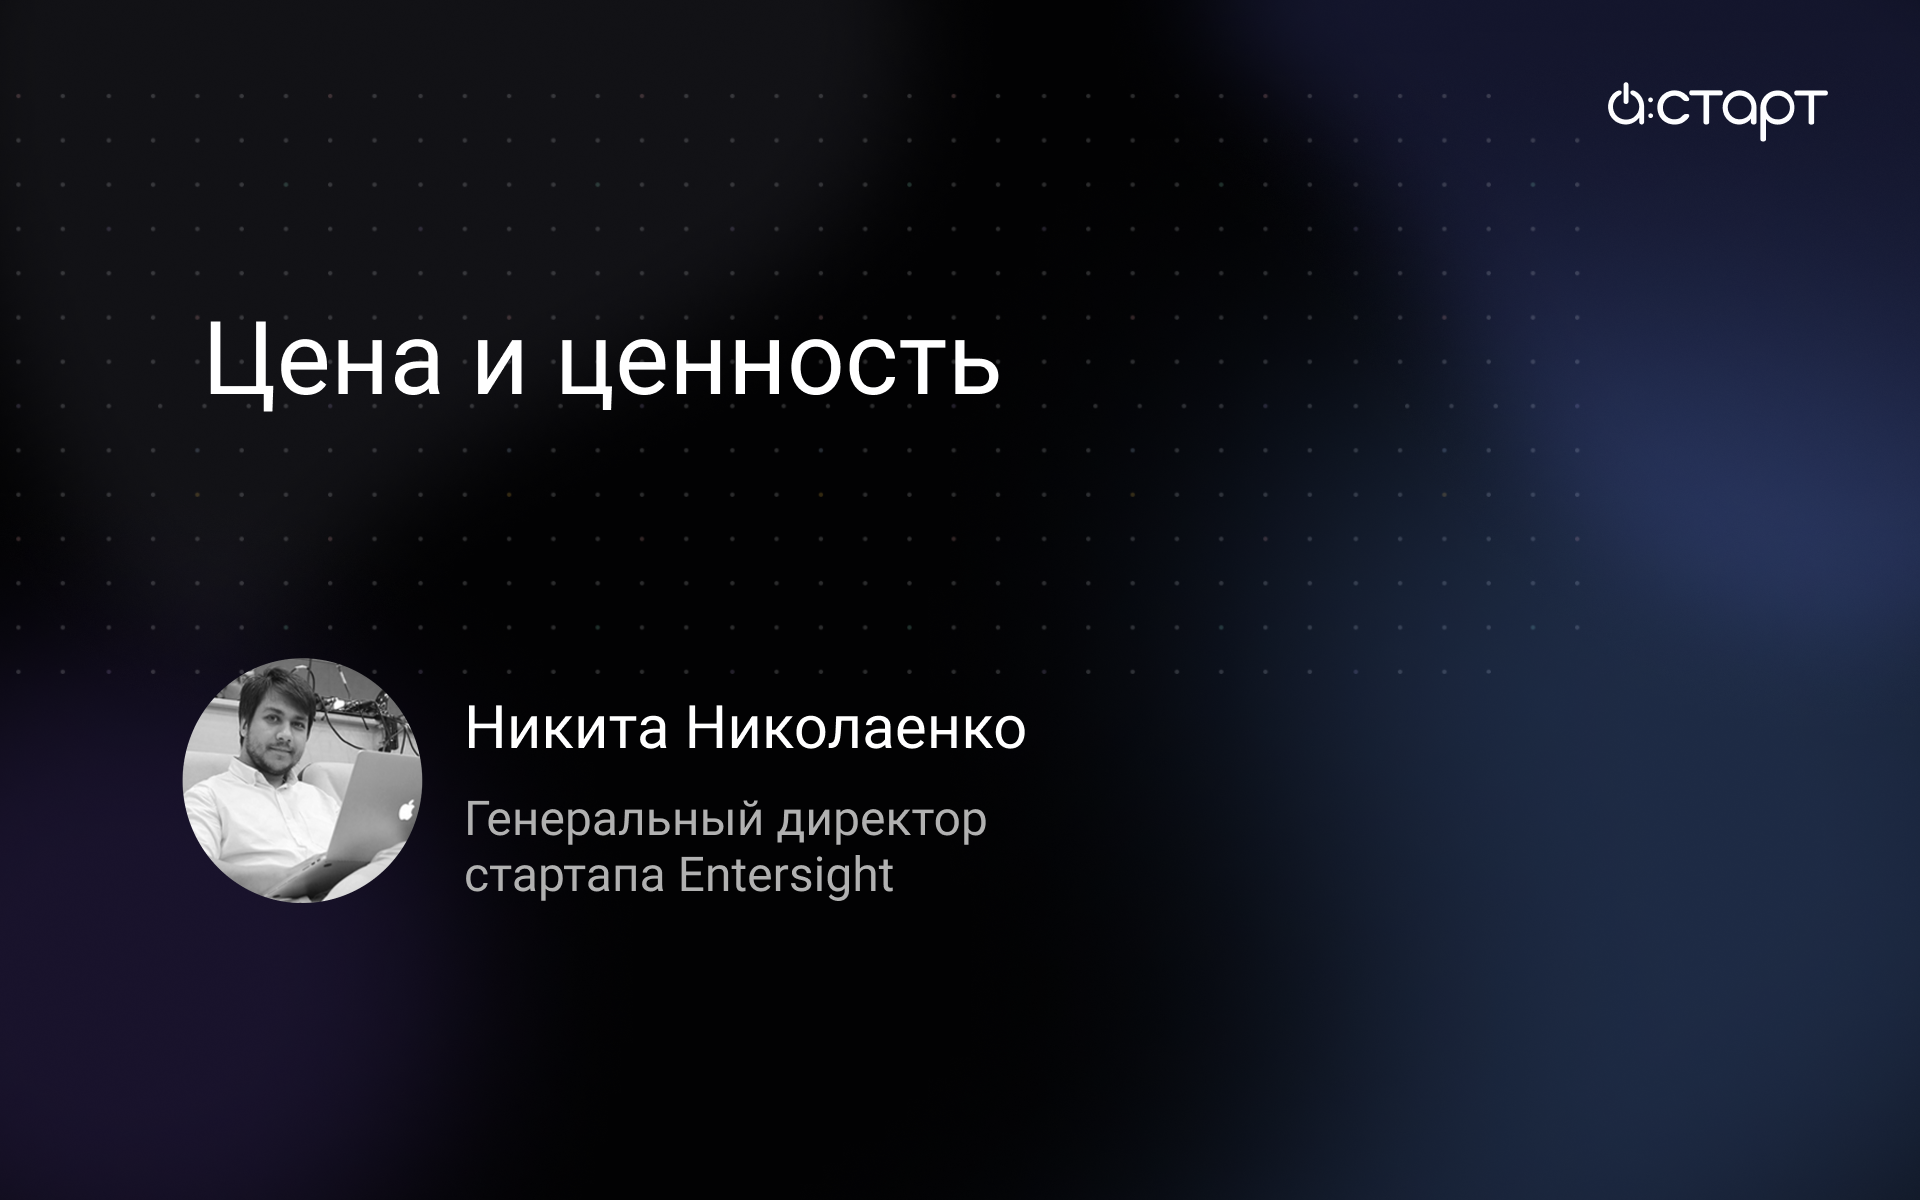 Цена и ценность - Никита Николаенко (генеральный директор стартапа Entersight) -  Акселератор А:СТАР